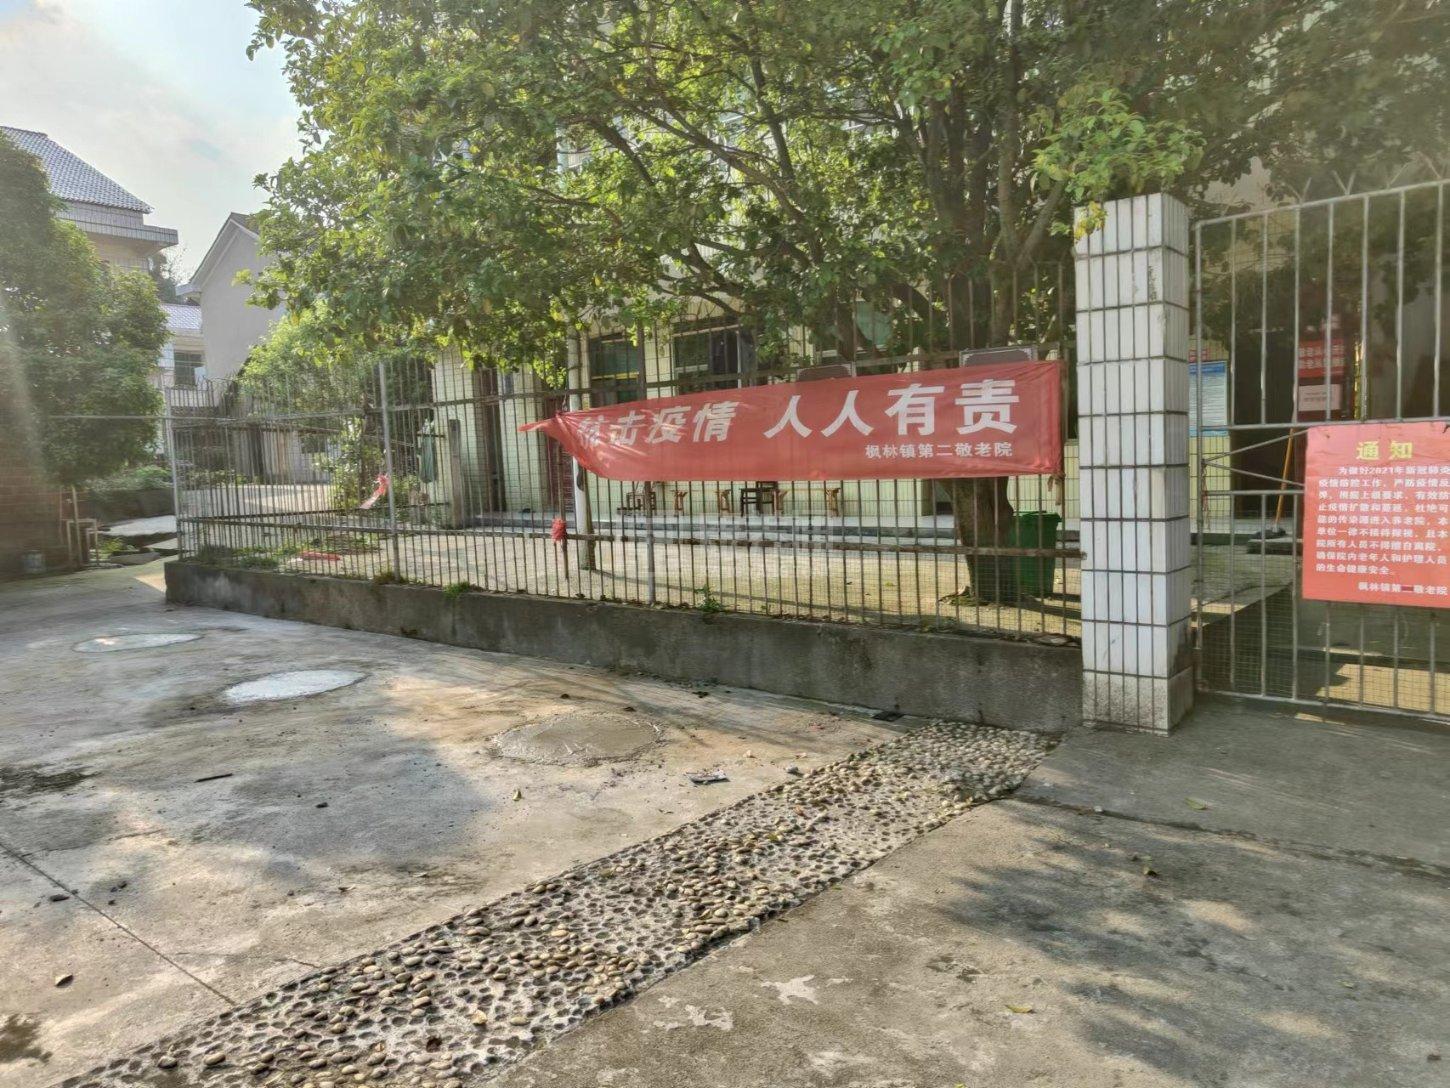 醴陵市枫林镇第二敬老院服务项目图2亦动亦静、亦新亦旧